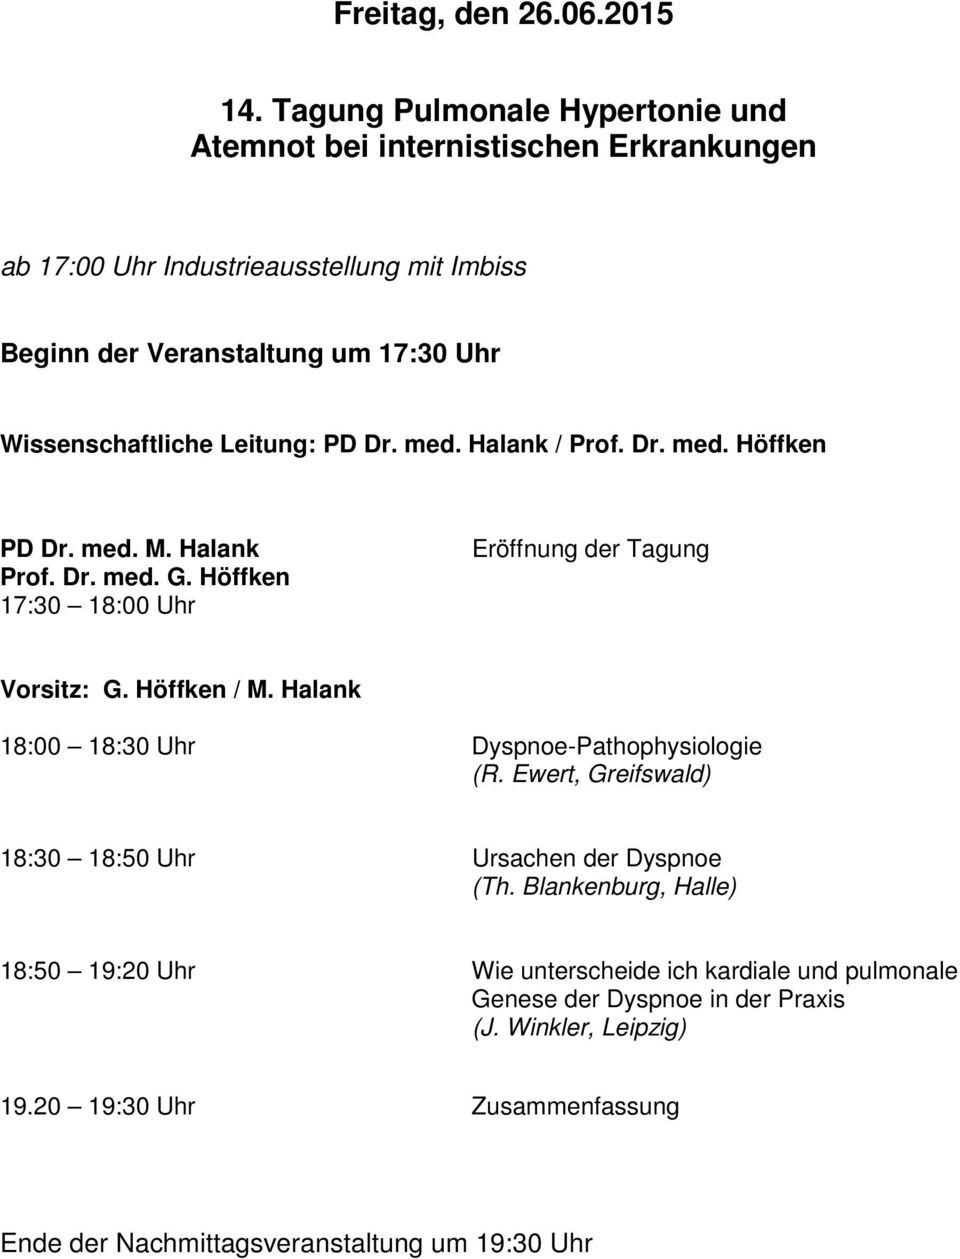 Wissenschaftliche Leitung: PD Dr. med. Halank / Prof. Dr. med. Höffken PD Dr. med. M. Halank Prof. Dr. med. G. Höffken 17:30 18:00 Uhr Eröffnung der Tagung Vorsitz: G.